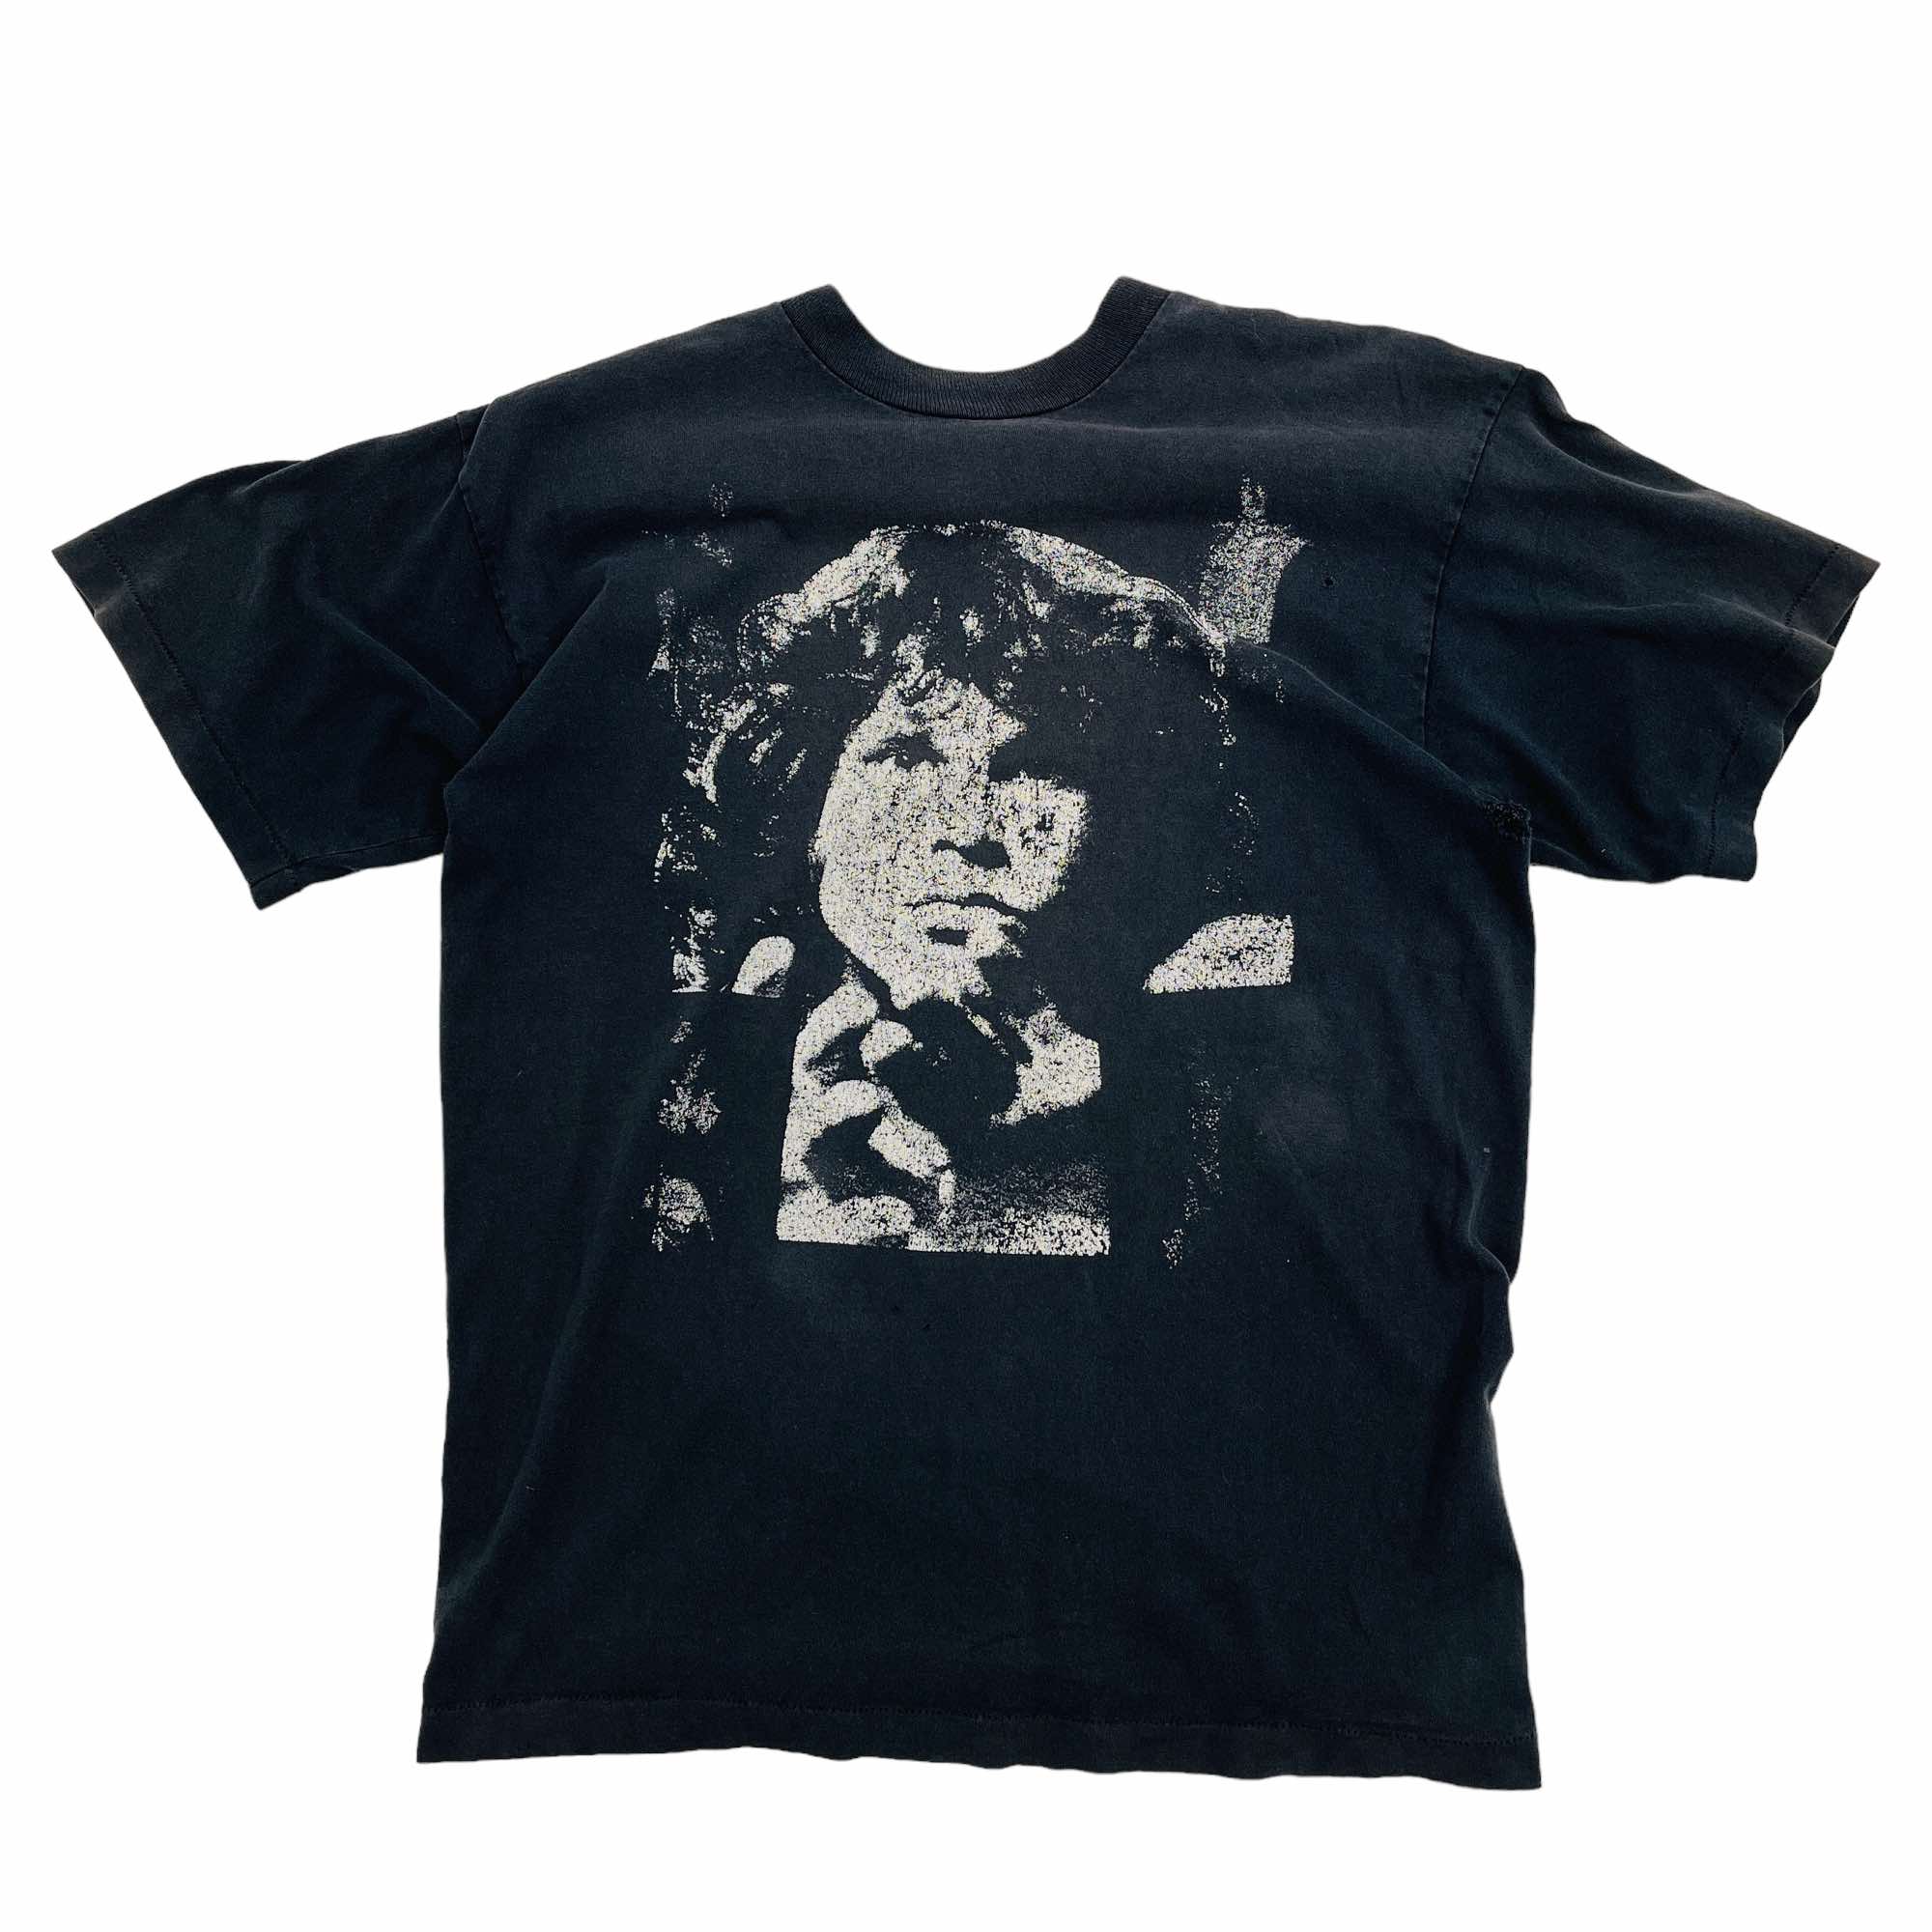 The Doors "Jim Morrison" T-Shirt - Medium